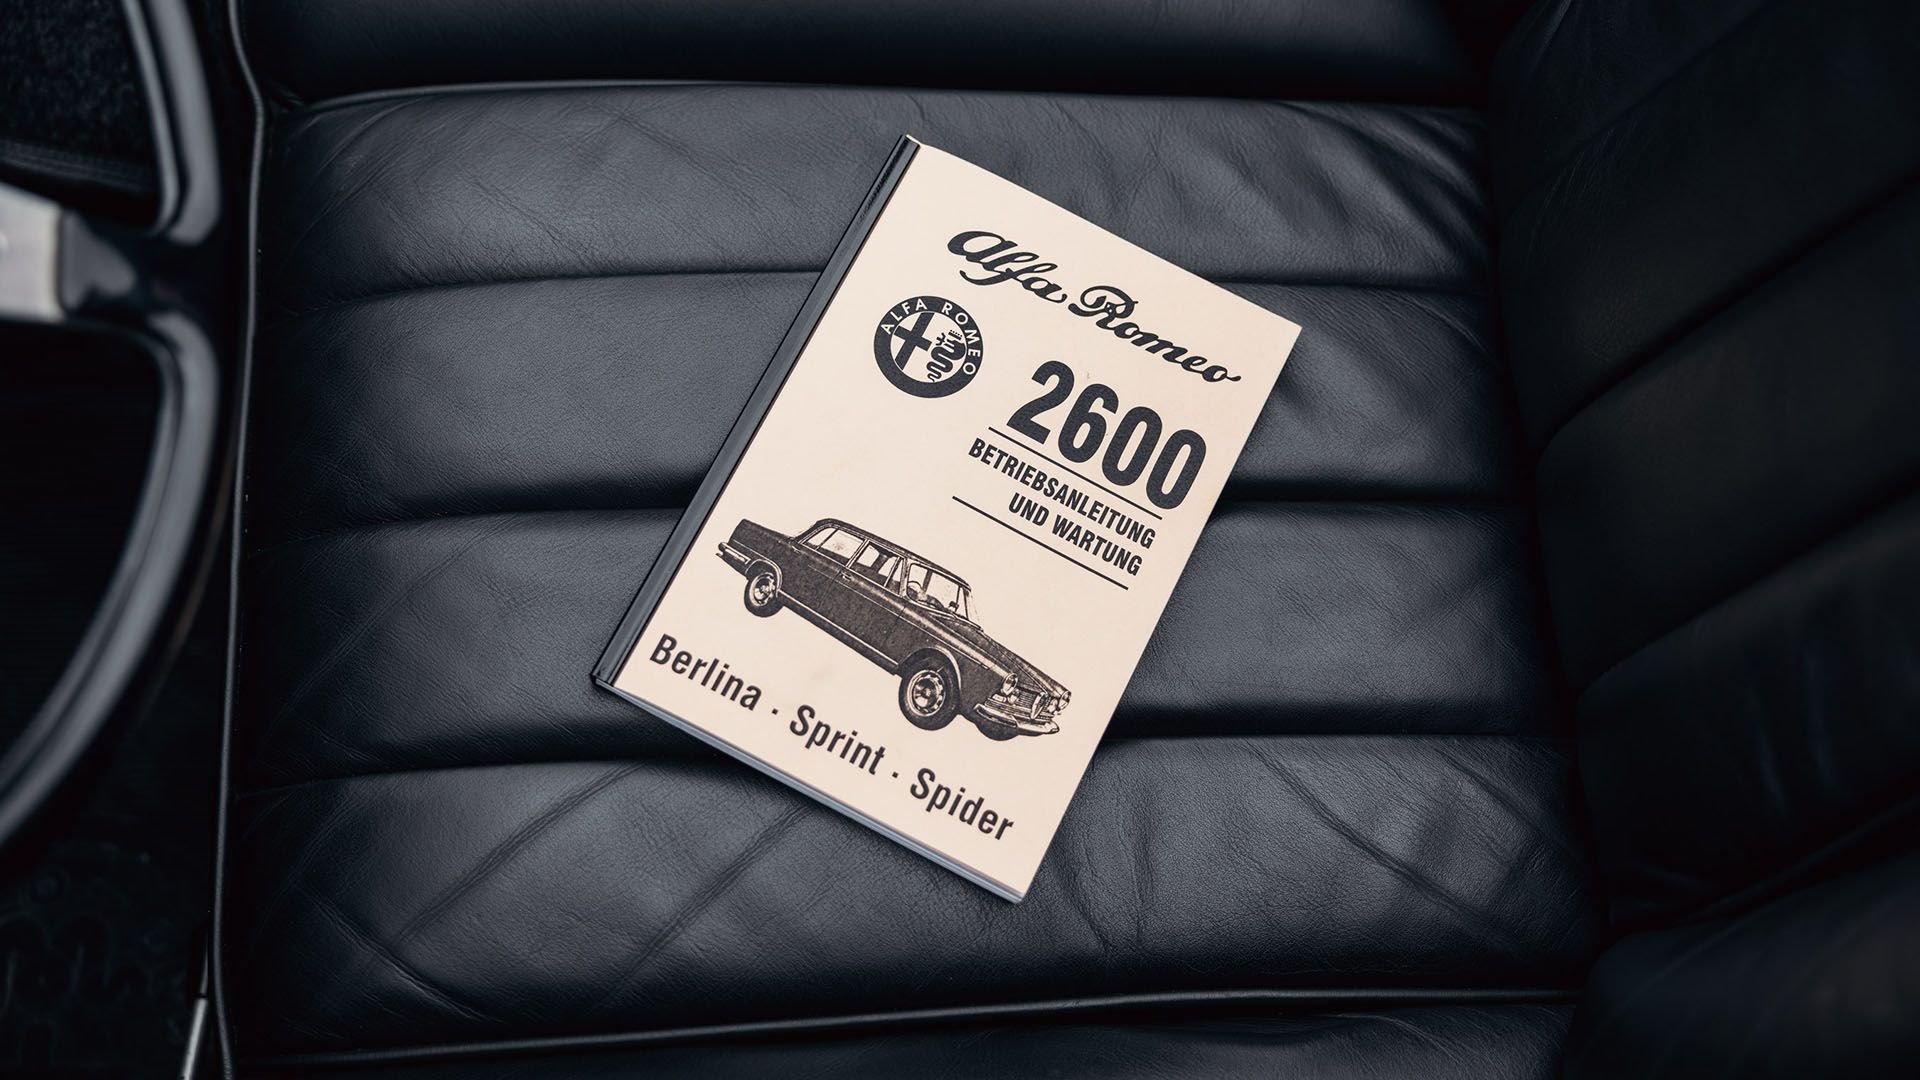 For Sale 1966 Alfa Romeo 2600 Spider